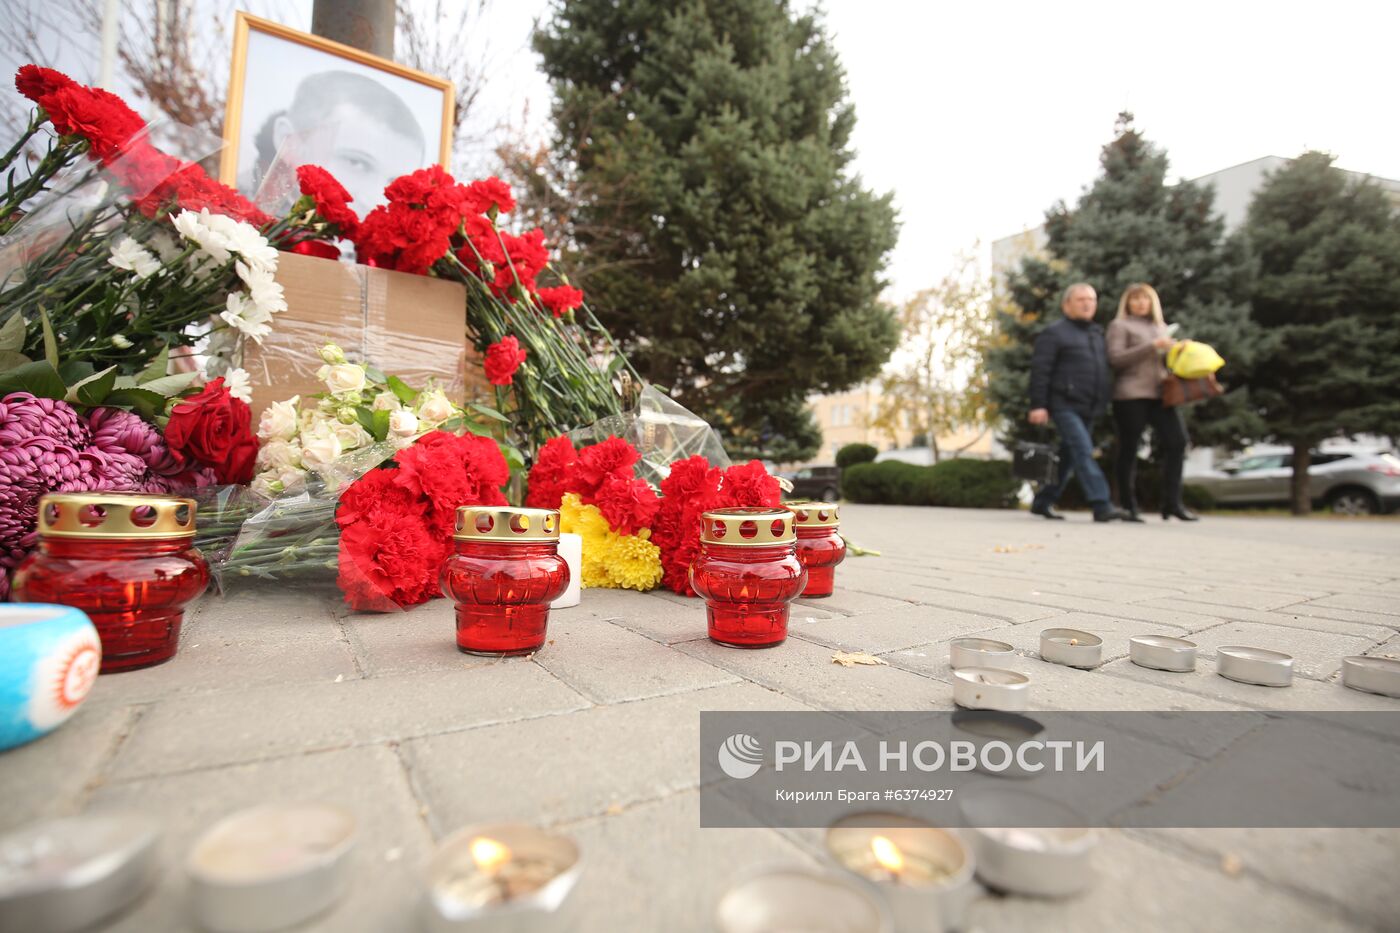 Стихийный мемориал на месте избиения риэлтора Р. Гребенюка в Волгограде